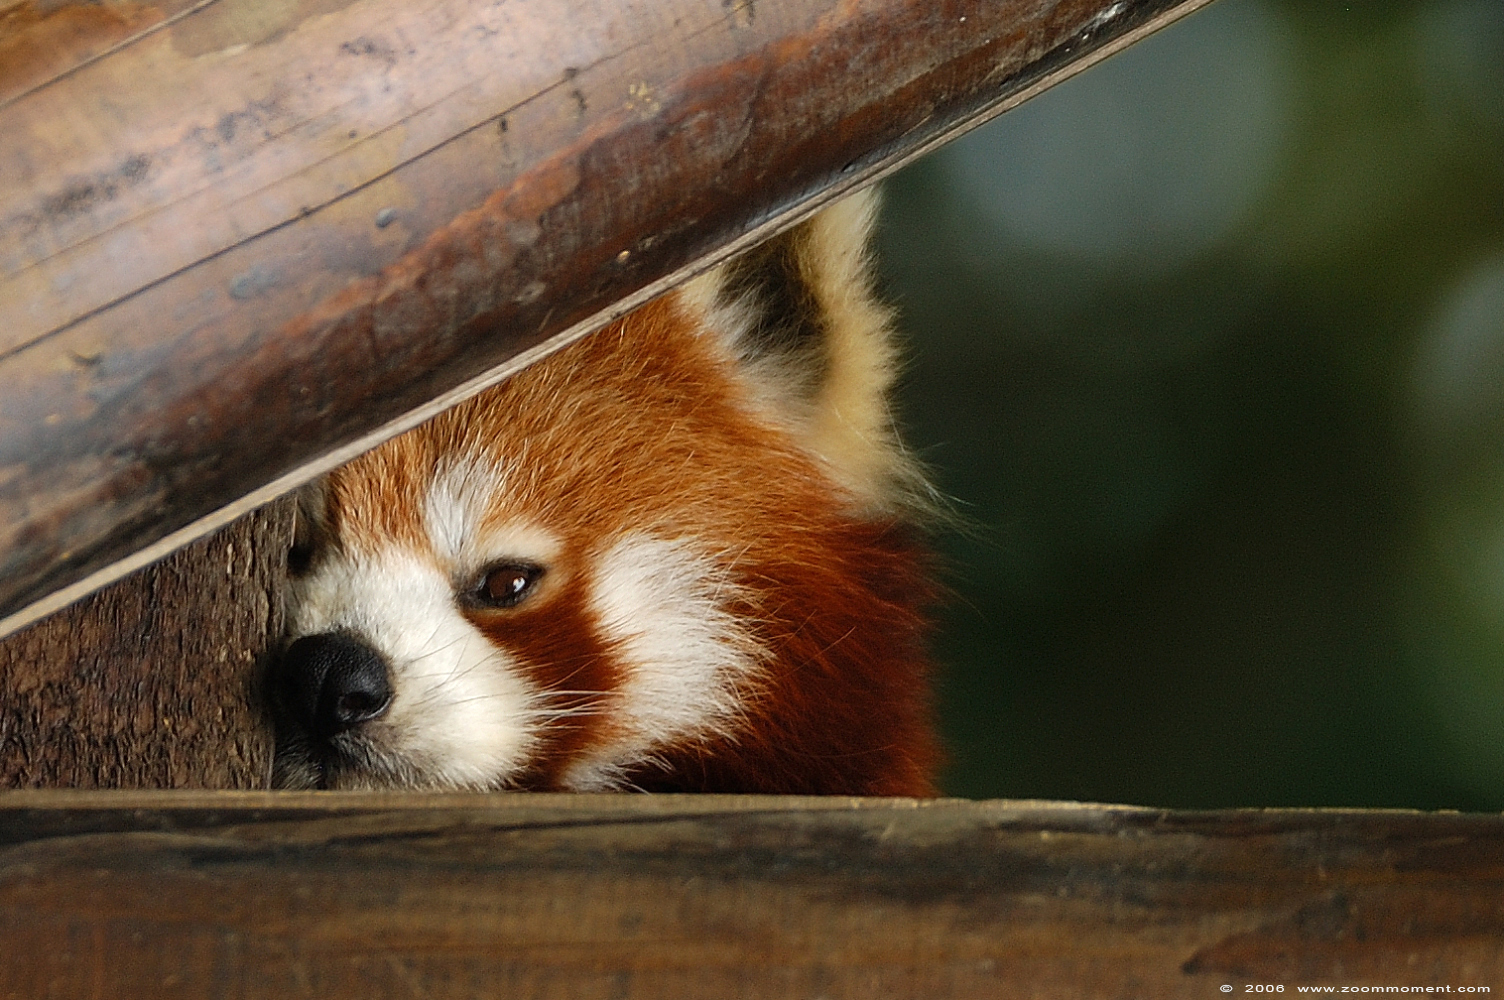 kleine of rode panda  ( Ailurus fulgens )  lesser or red panda
Keywords: Aachen Aken zoo red lesser panda rode kleine panda Ailurus fulgens